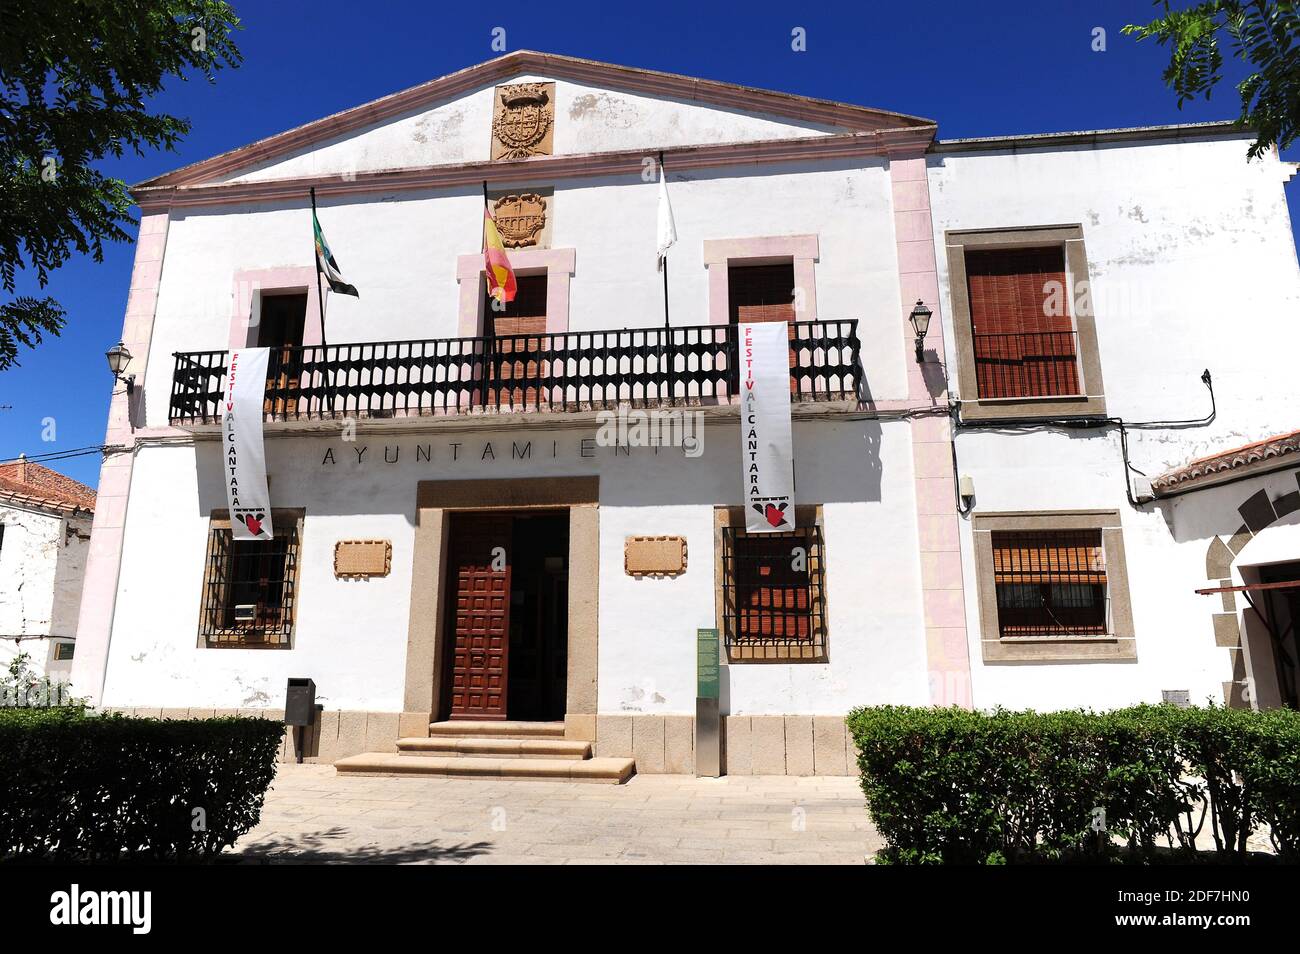 Alcantara, town hall. Caceres, Extremadura, Spain. Stock Photo